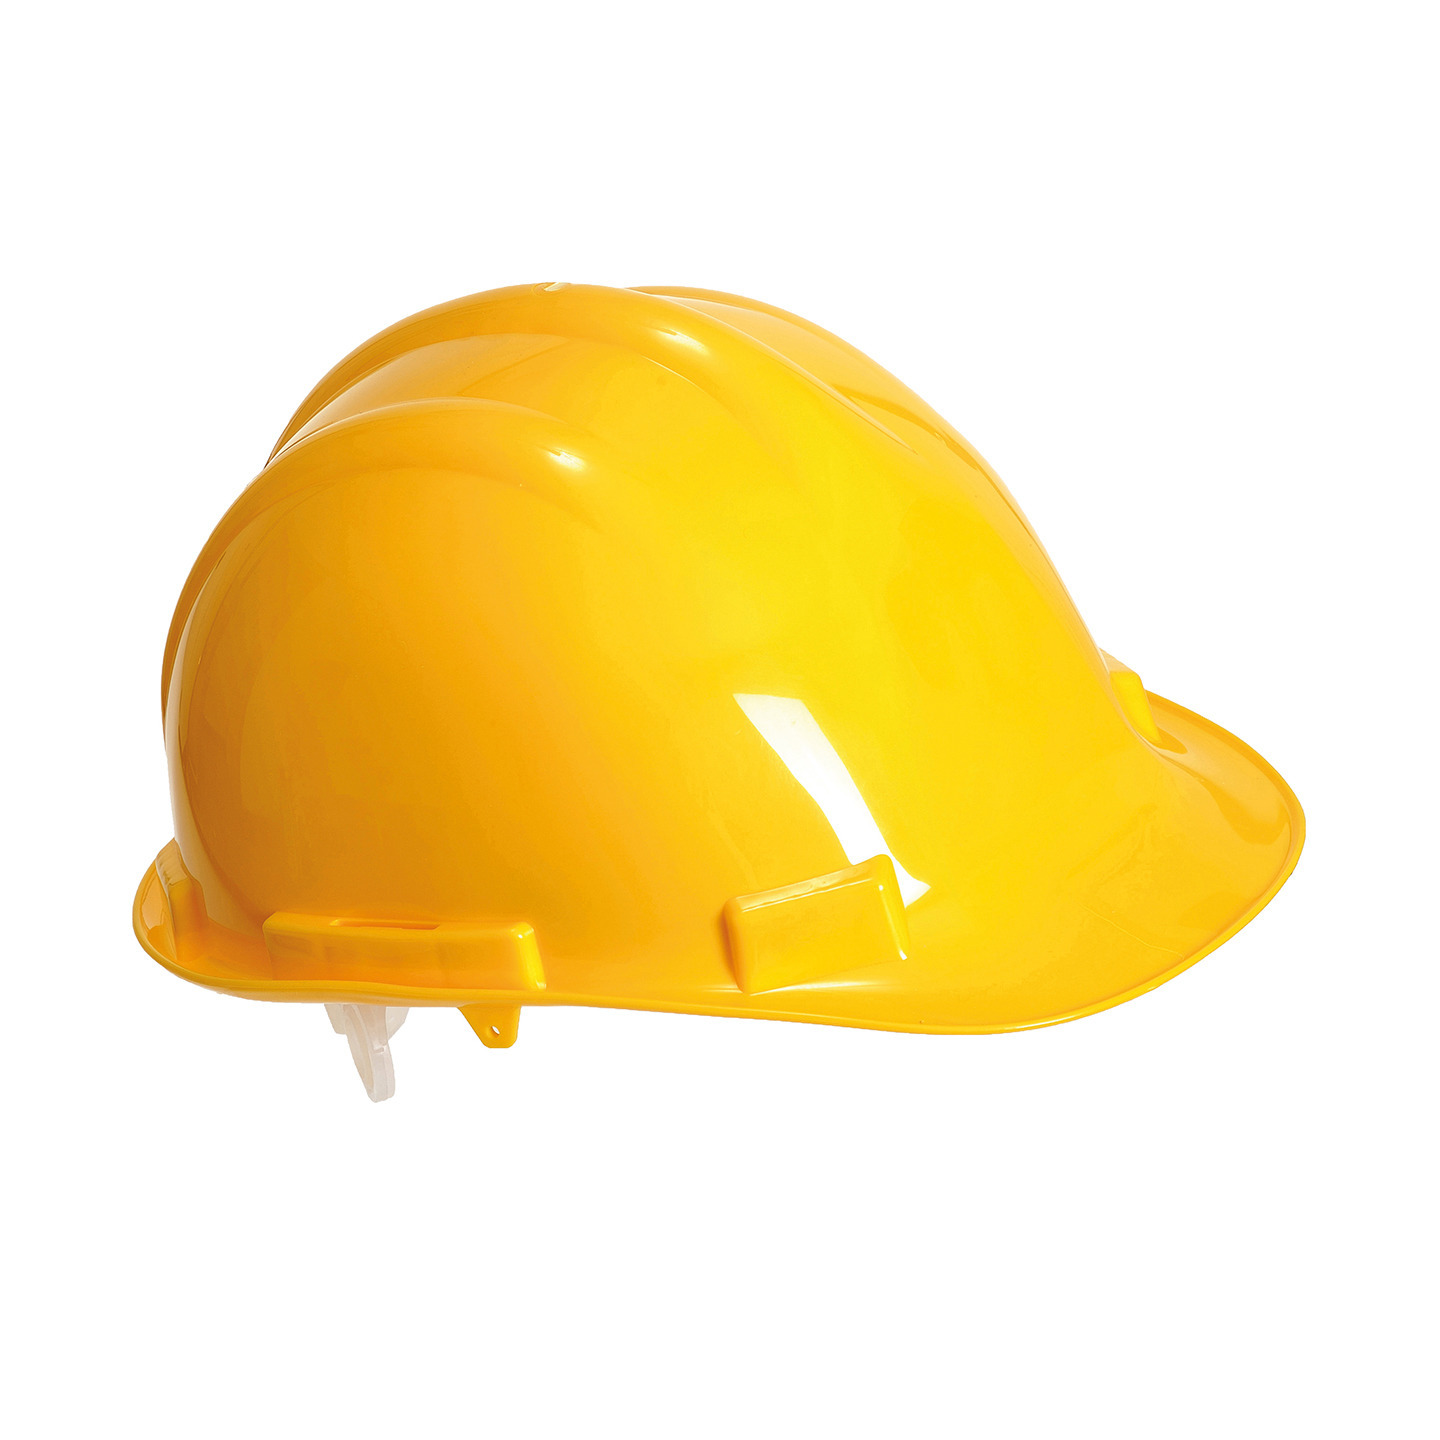 Veiligheidshelm-bouwhelm hoofdbescherming geel verstelbaar 55-62 cm